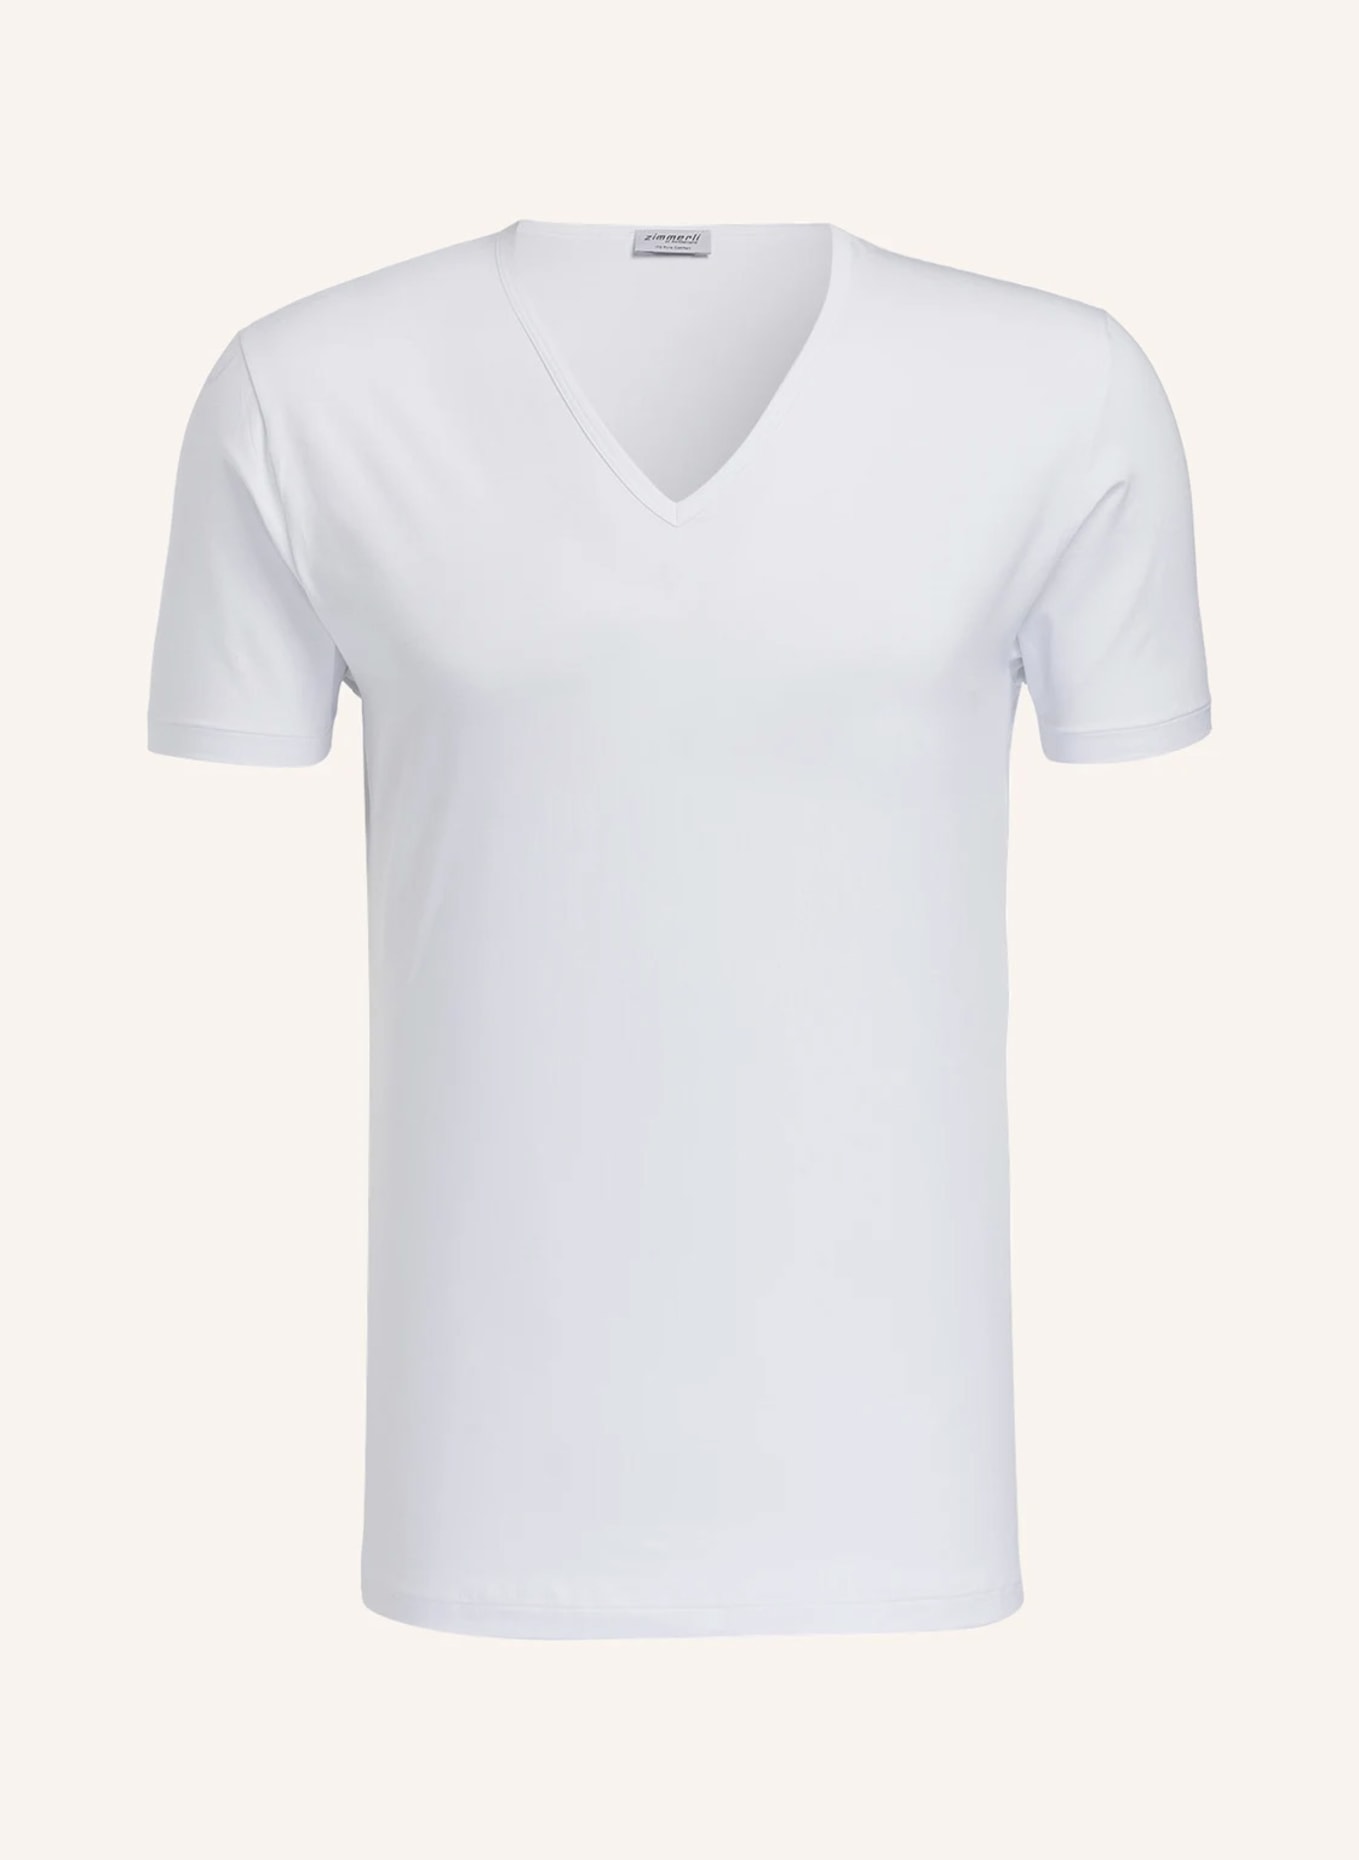 zimmerli V-neck shirt PURE COMFORT, Color: WHITE (Image 1)